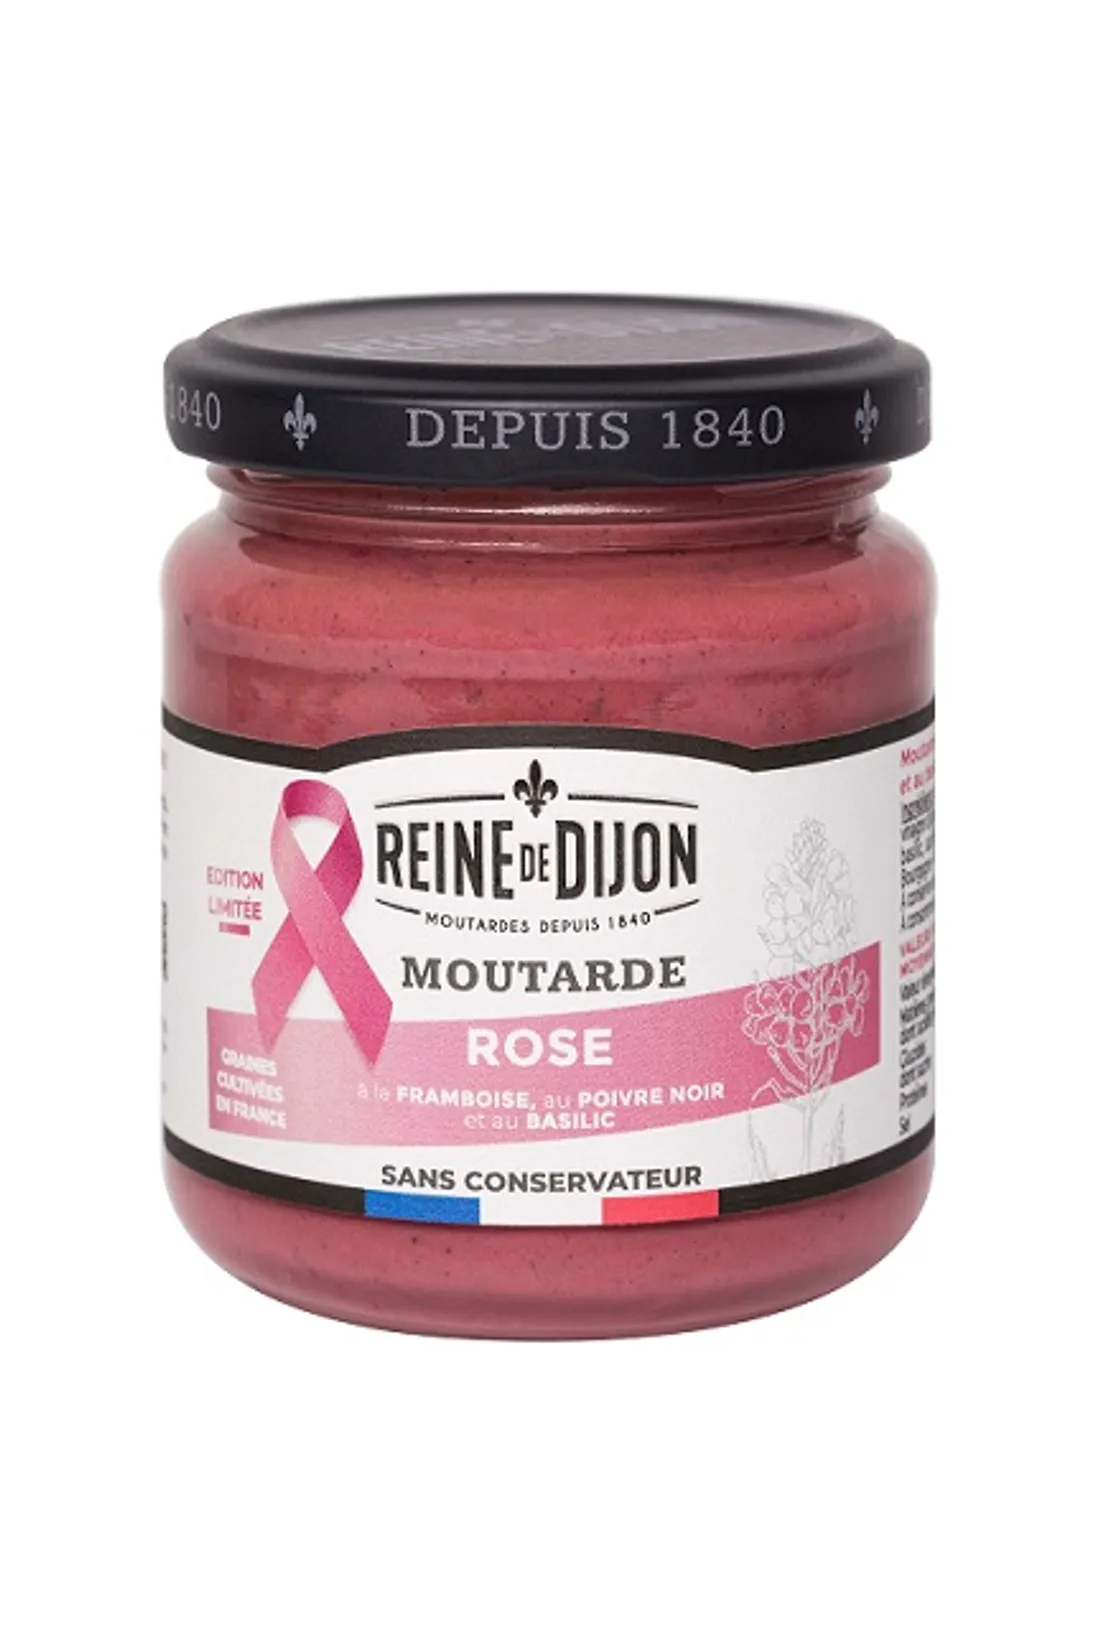 Reine de Dijon vient de lancer une nouvelle moutarde, de couleur rose